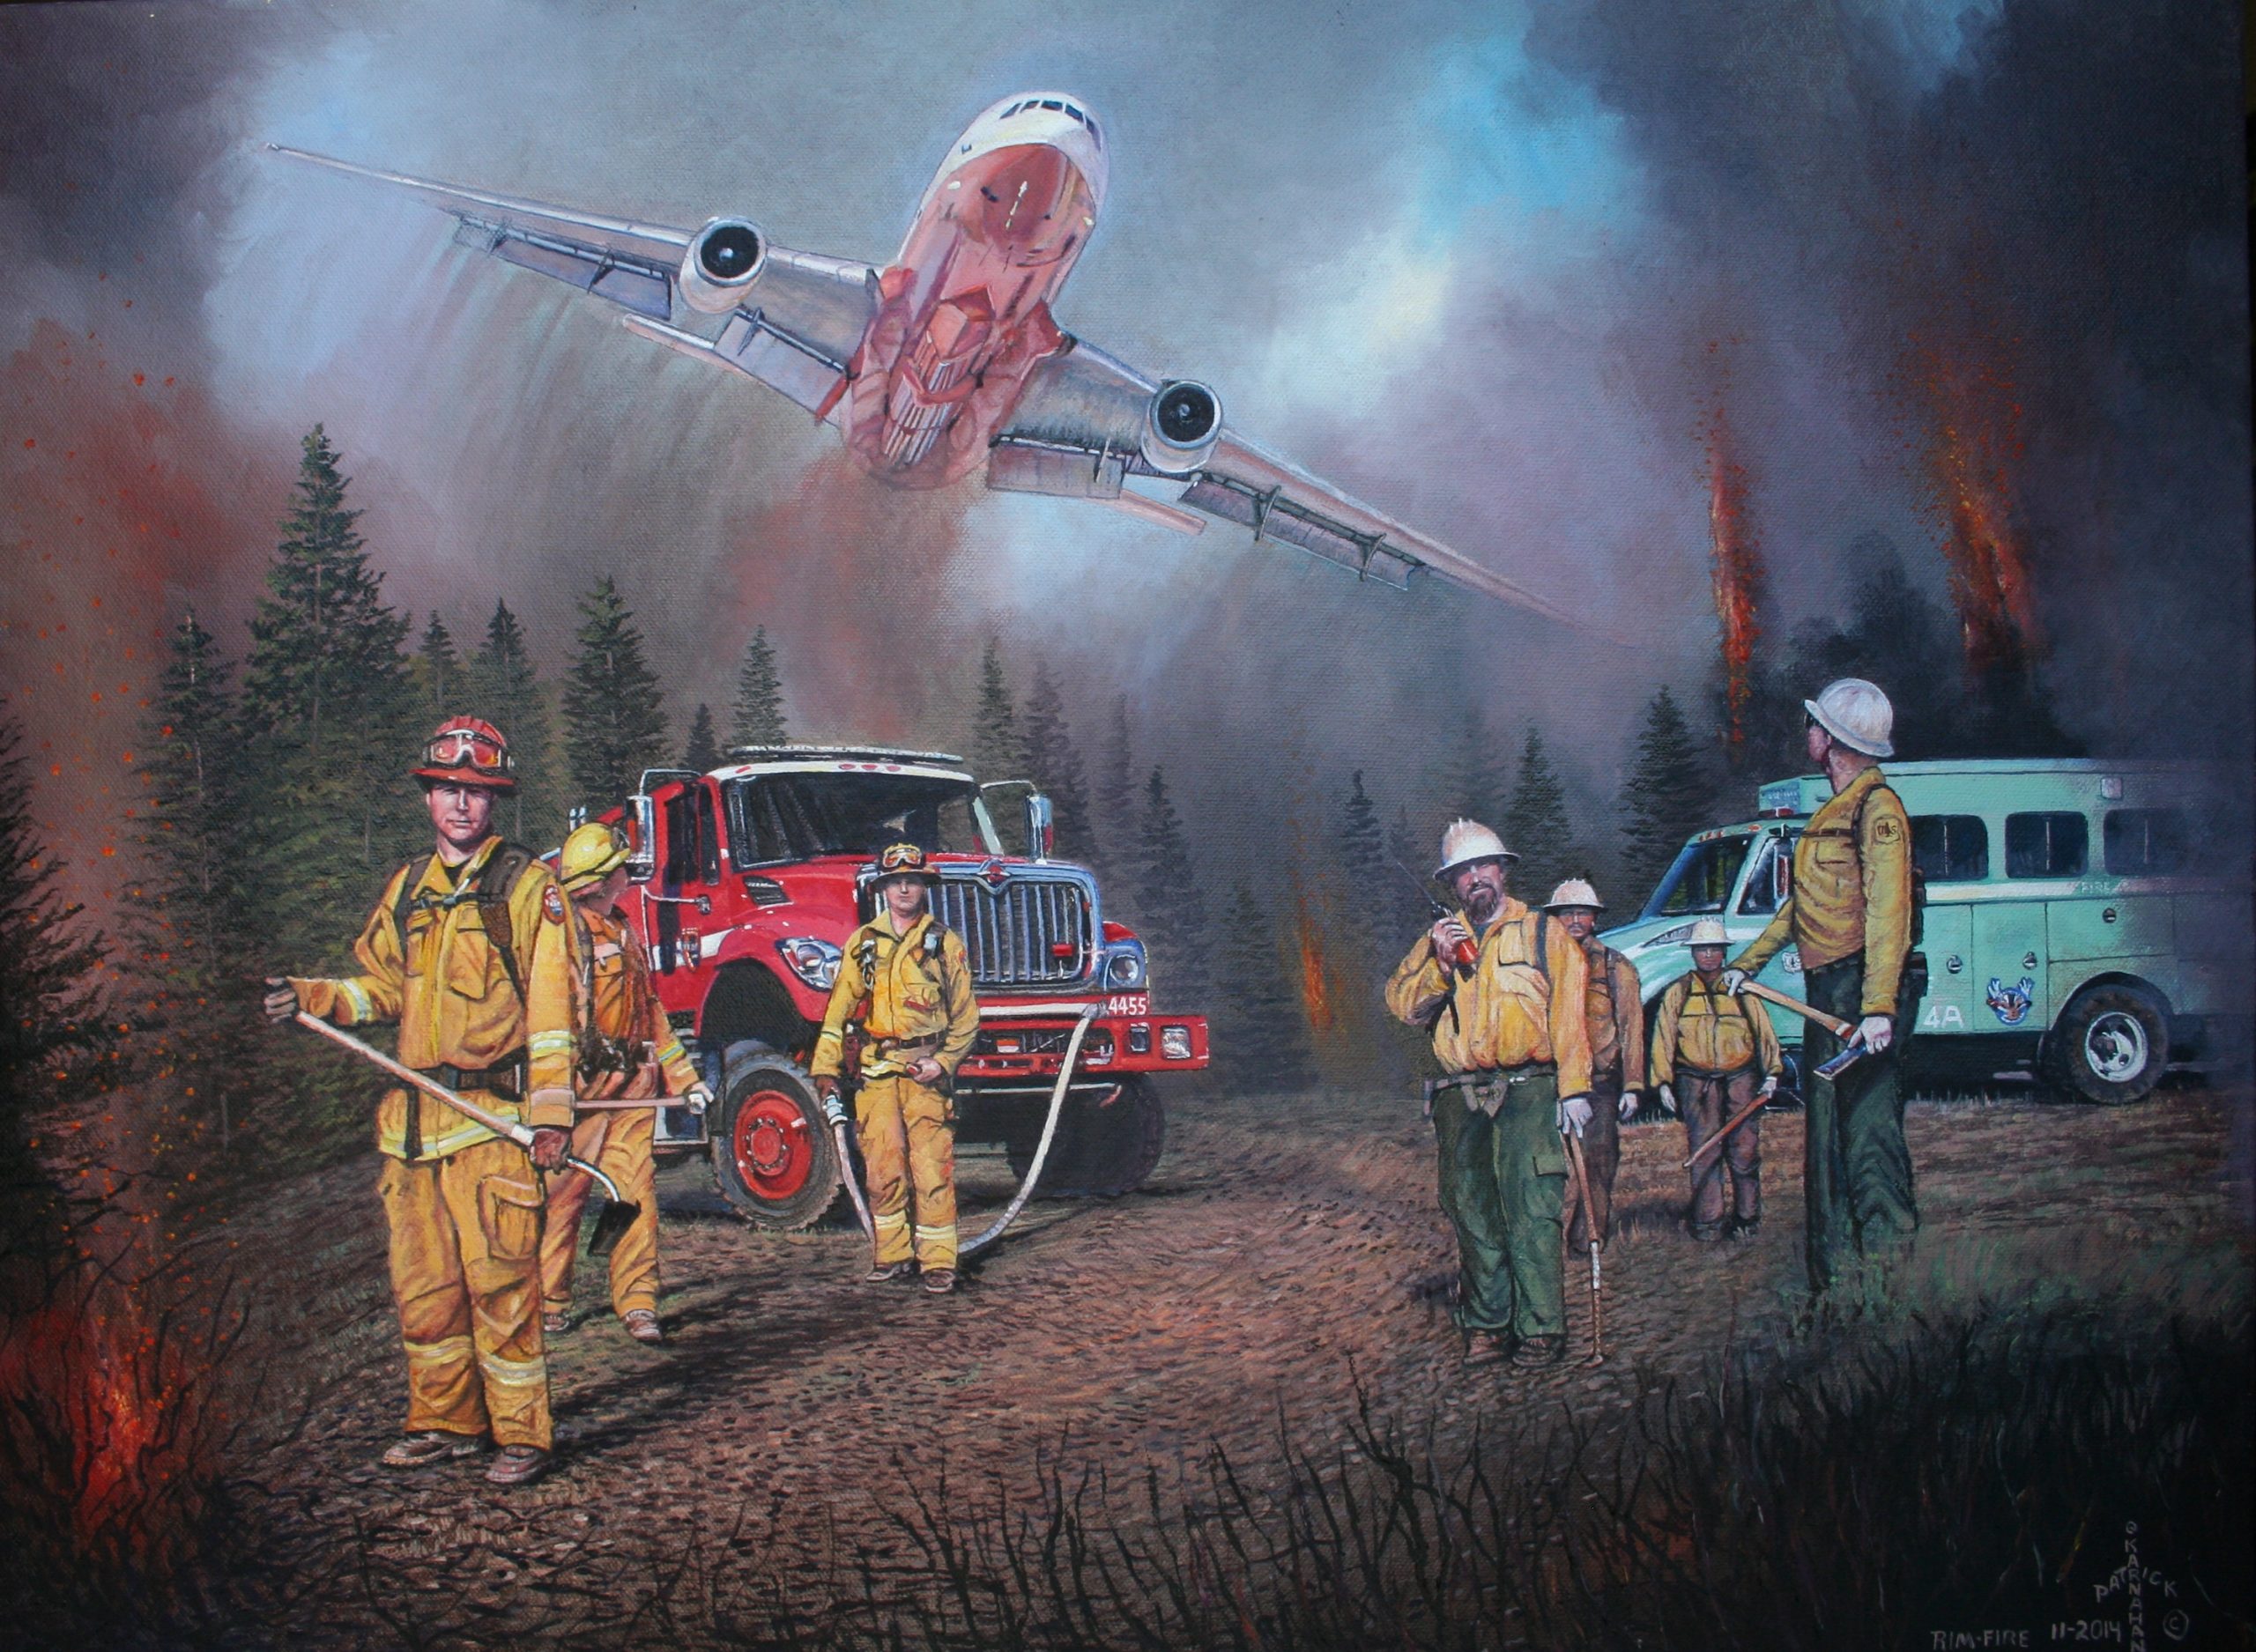 Firefighter-Themed Inspirational Wall Art